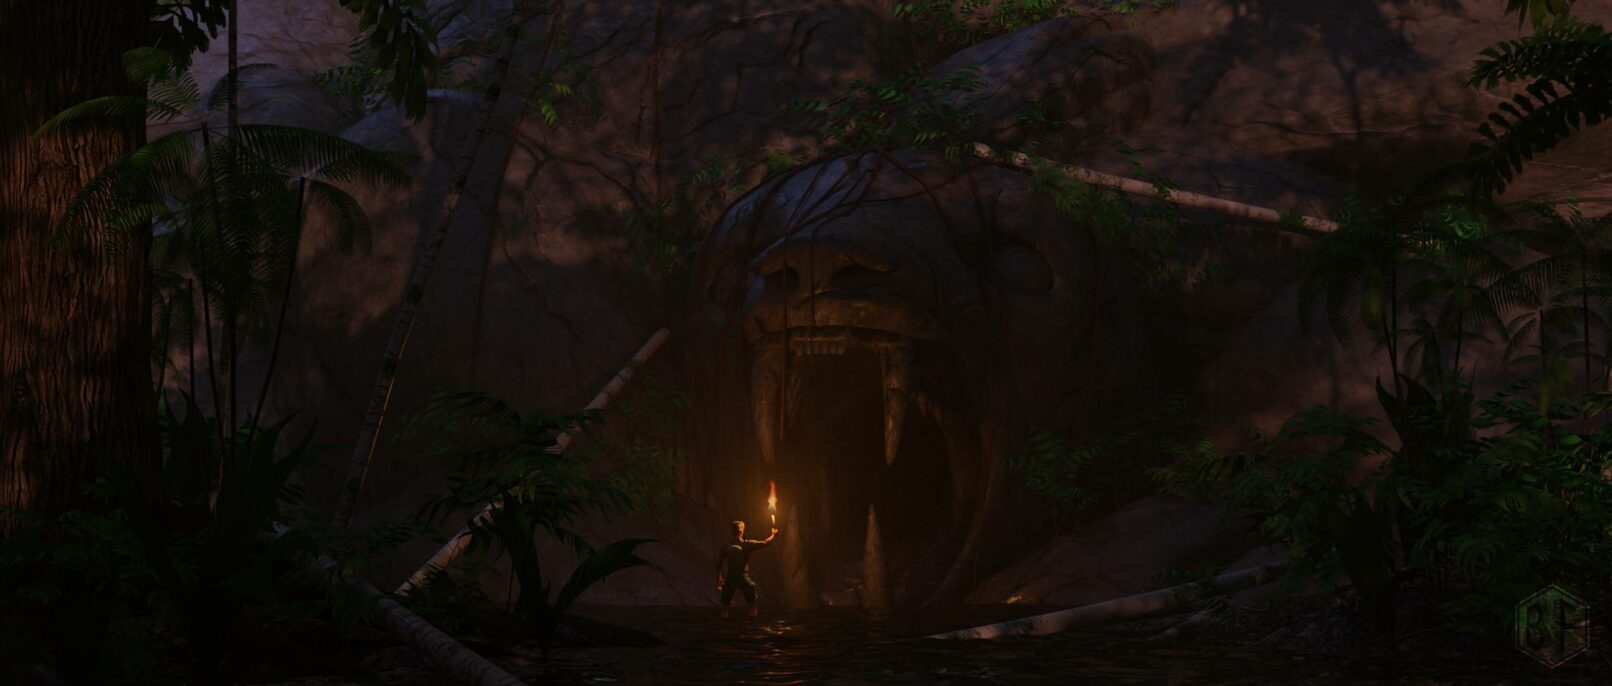 Explorateur de la jungle confronté à une entrée majestueuse en forme de tête de jaguar taillée dans la roche.